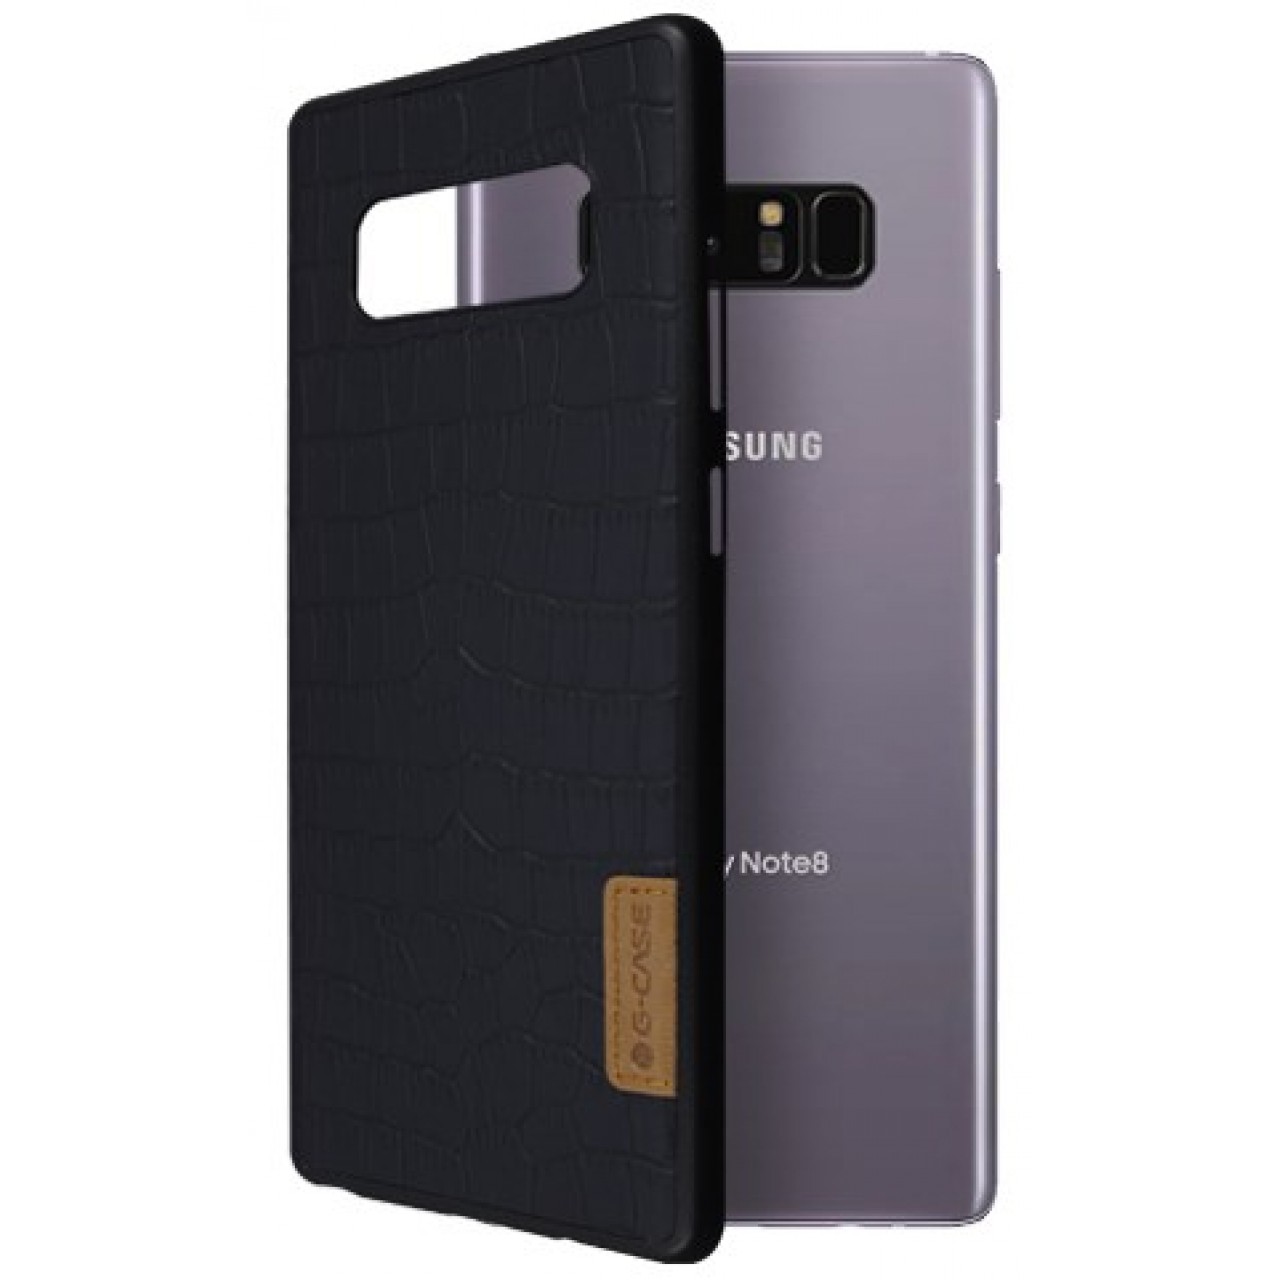 Θήκη Samsung Galaxy Note 8 ( N950N ) G-CASE Dark serie Σιλικόνης TPU - 2970 - Crocodile Pattern - Μαύρο - OEM